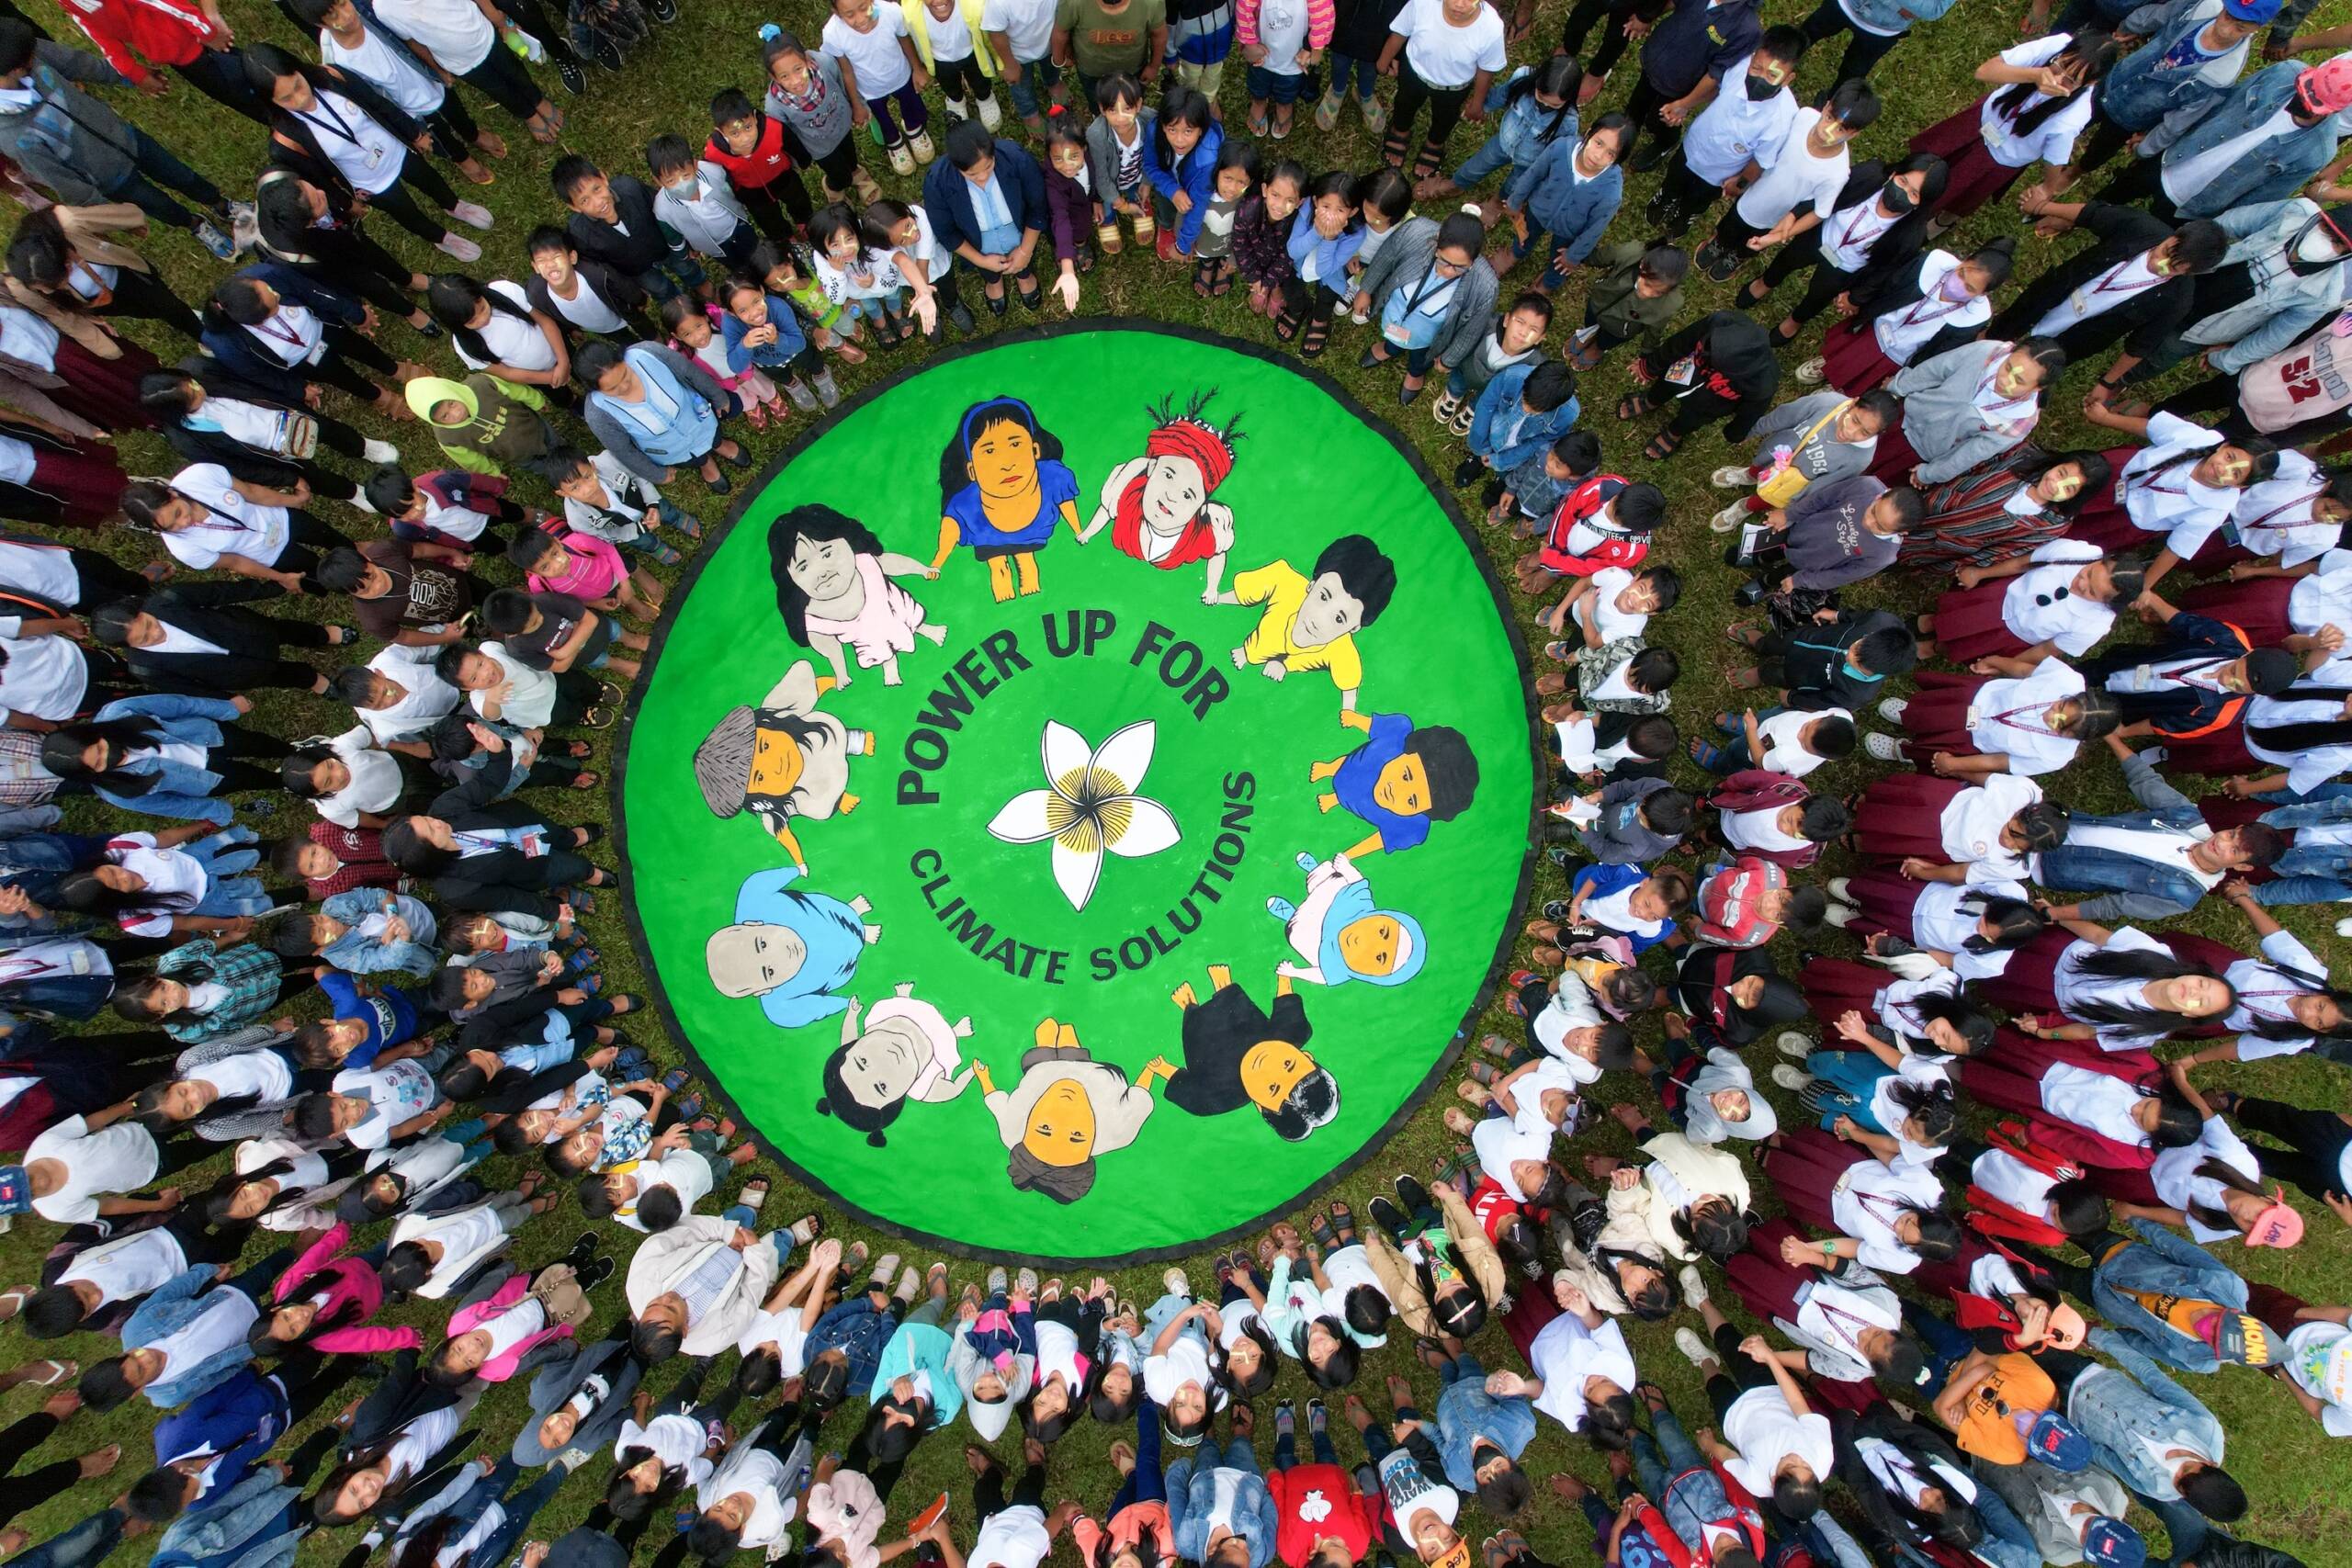 Filipinas: un total de 360 estudiantes y profesores unieron sus fuerzas para defender soluciones energéticas renovables lideradas por las comunidades. Fotografía: Kathleen Lei Limayo, Genesis Epistola